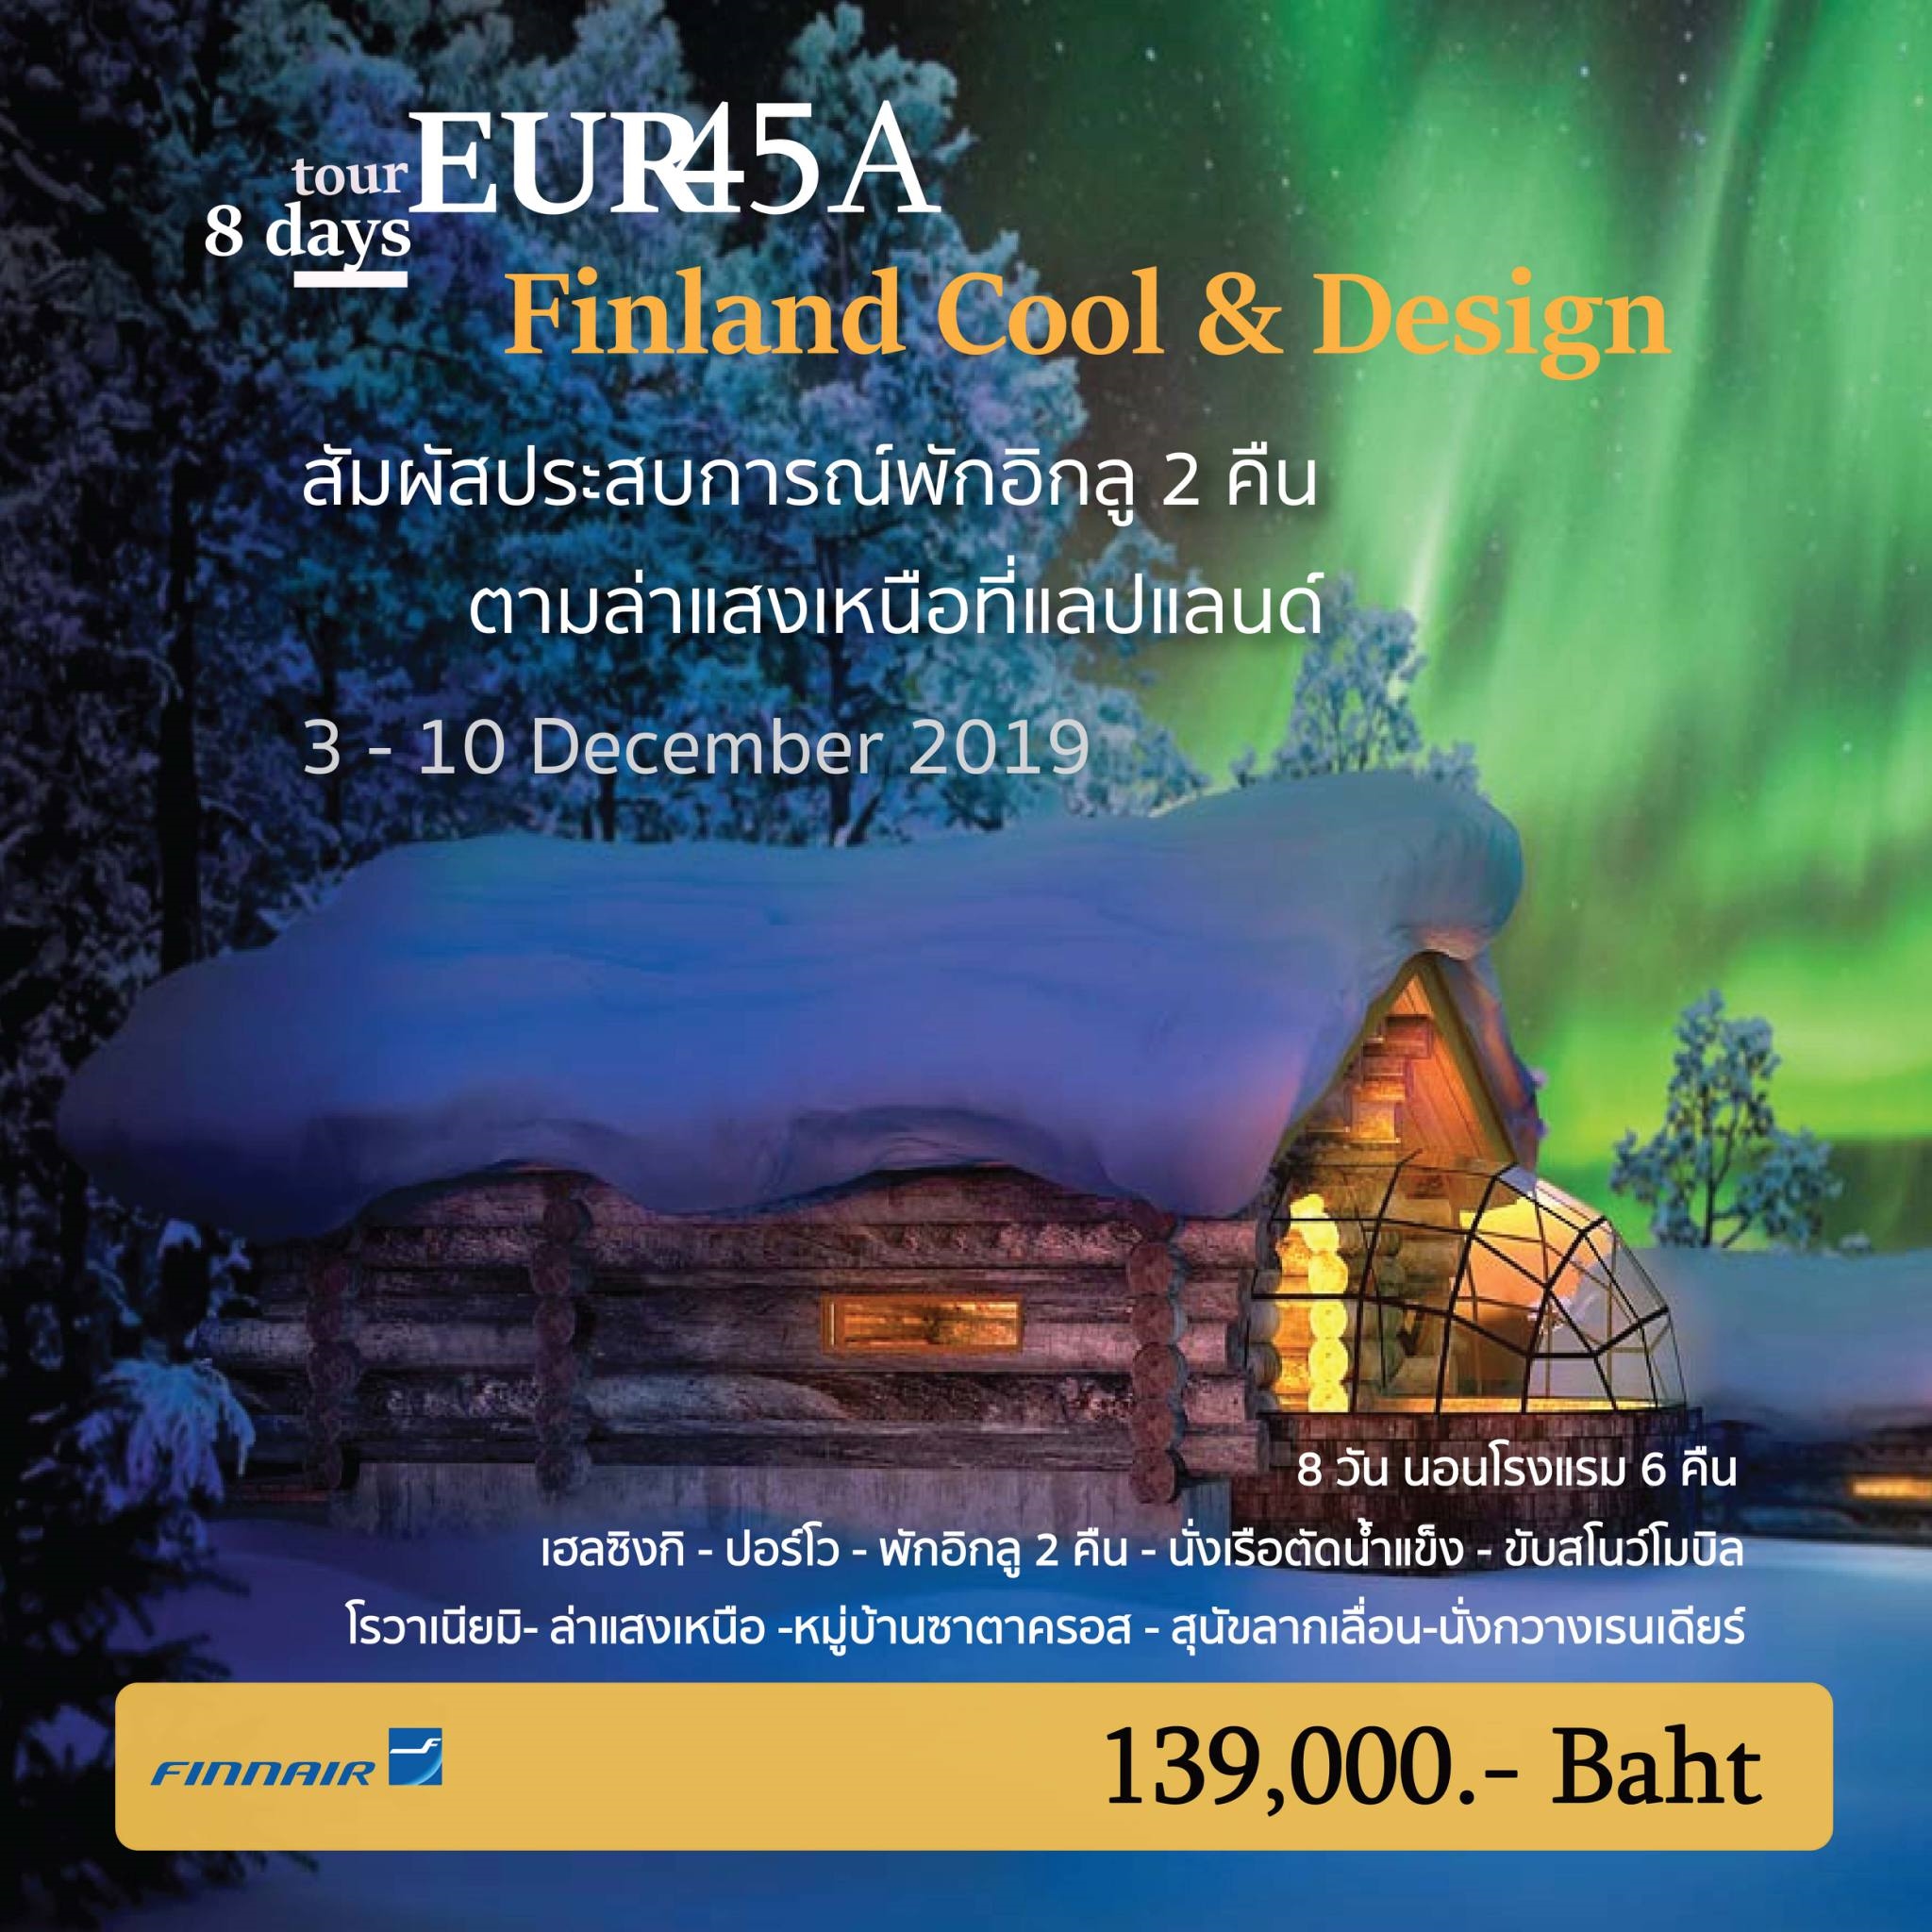 ทัวร์ยุโรป FINLAND COOL & DESIGN GLASS IGLOOS 8D 6N (3-10 Dec19)(EUR45A)